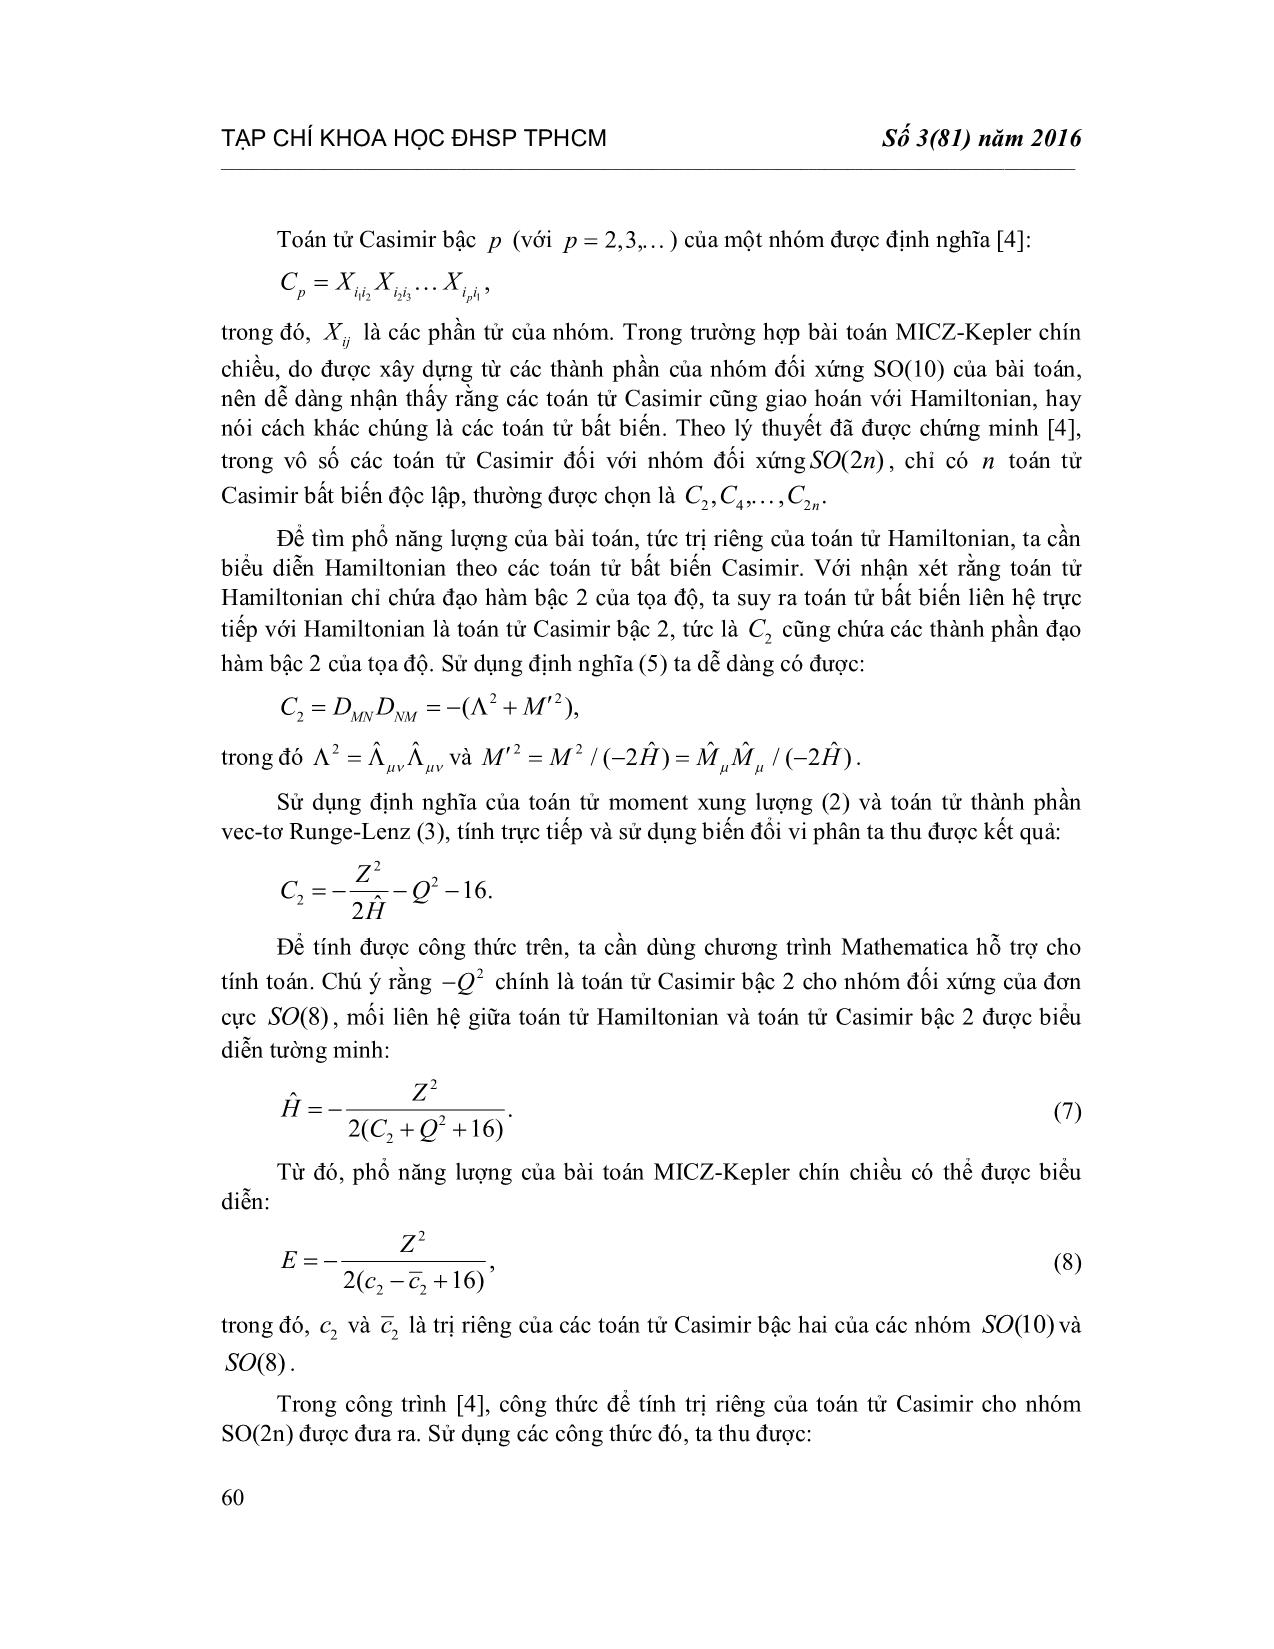 Toán tử Casimir C2 cho nhóm đối xứng SO(10) của bài toán Micz-Kepler chín chiều trang 4